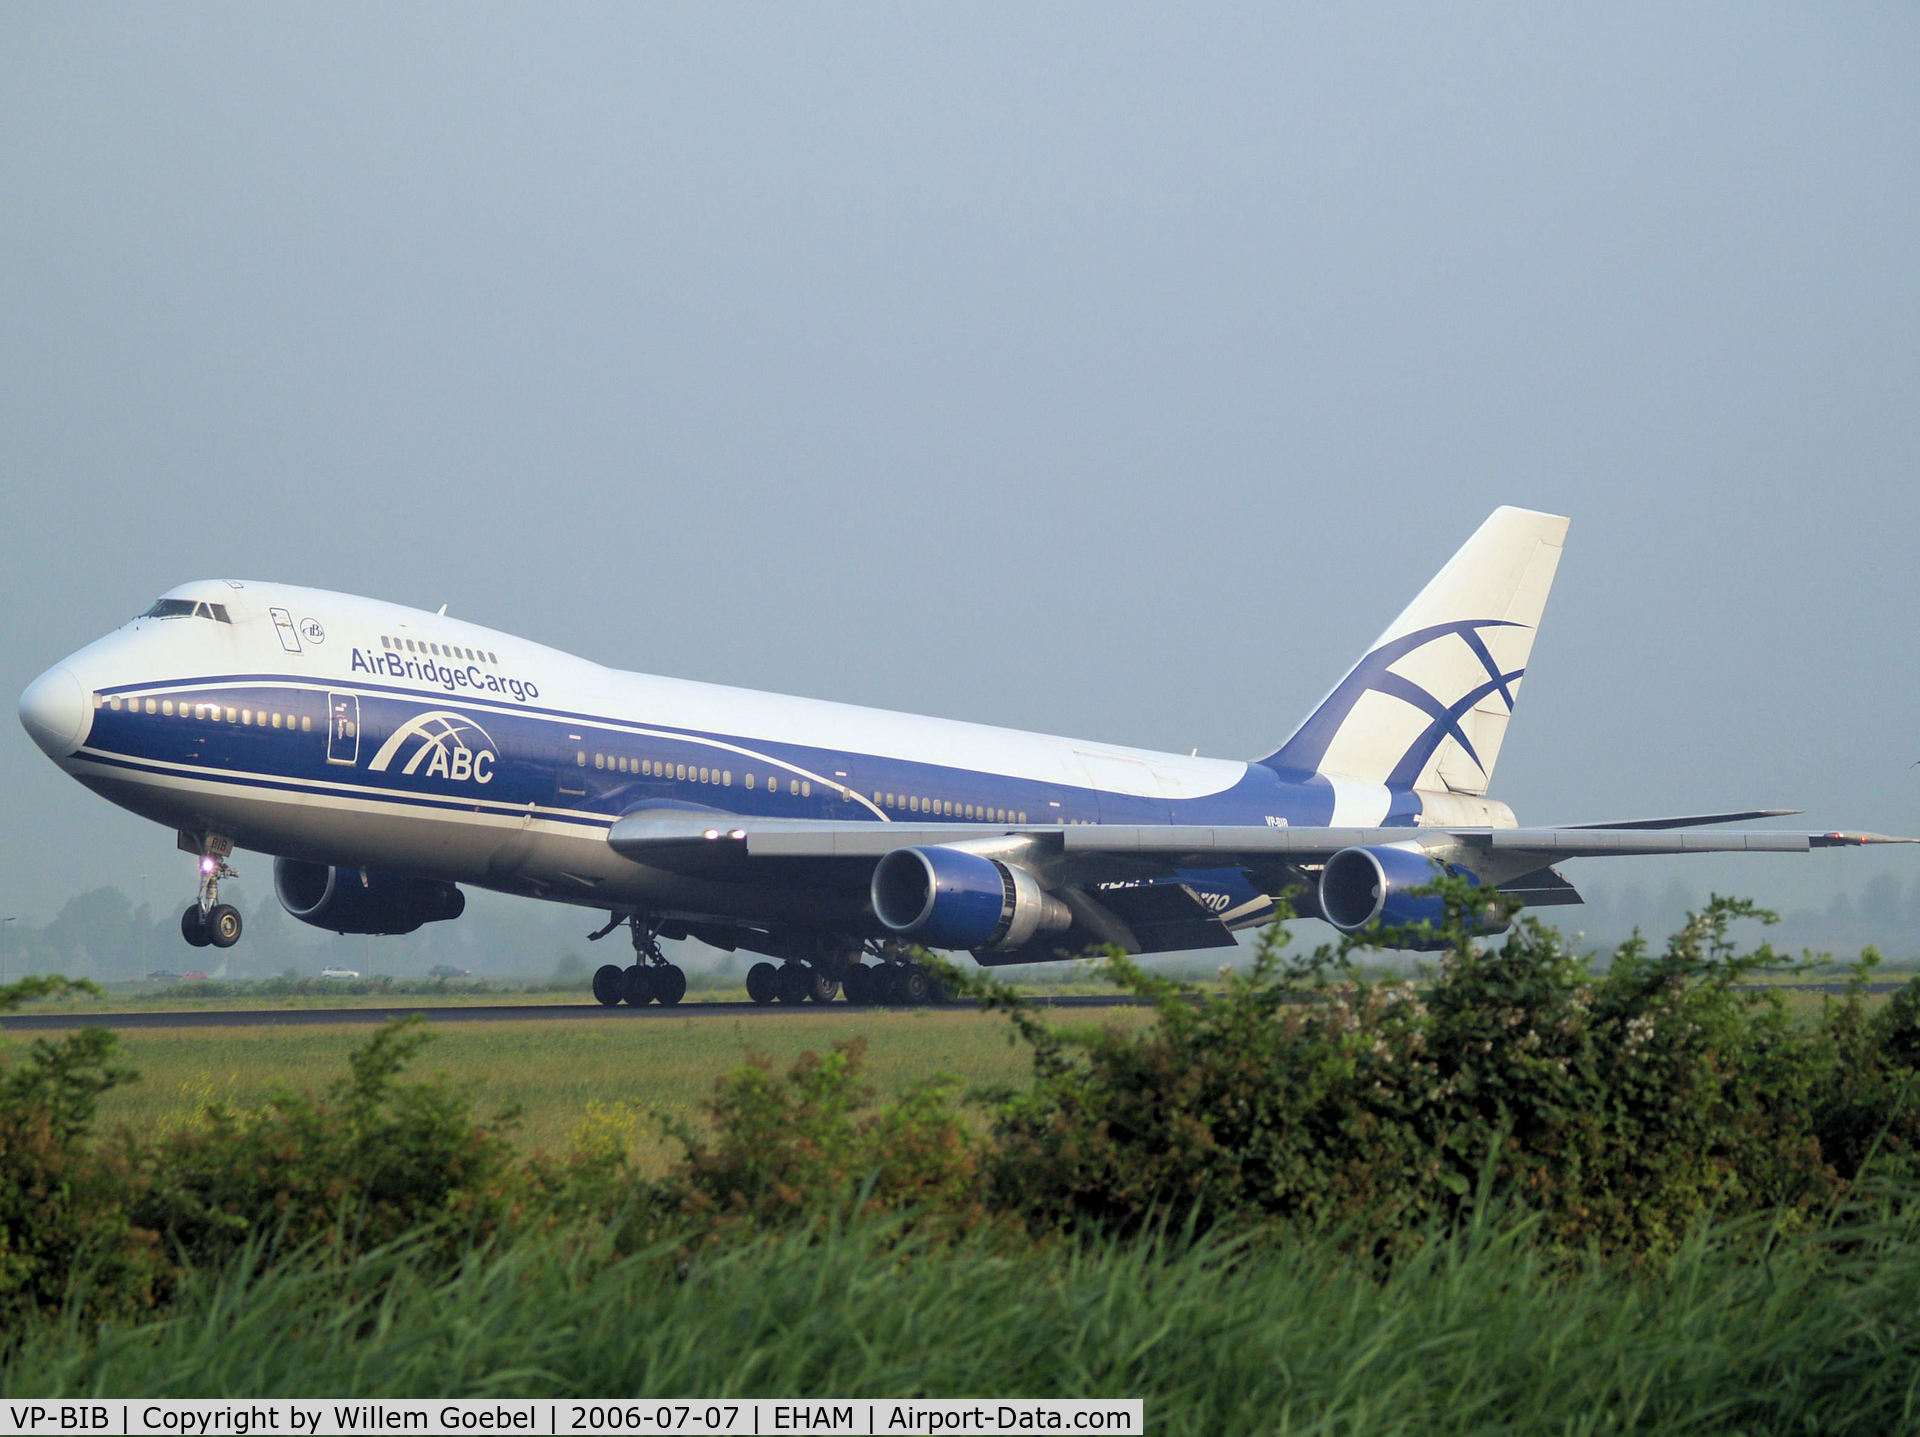 VP-BIB, 1980 Boeing 747-243B C/N 22506, Landing on runway R18 of Amsterdam Airport